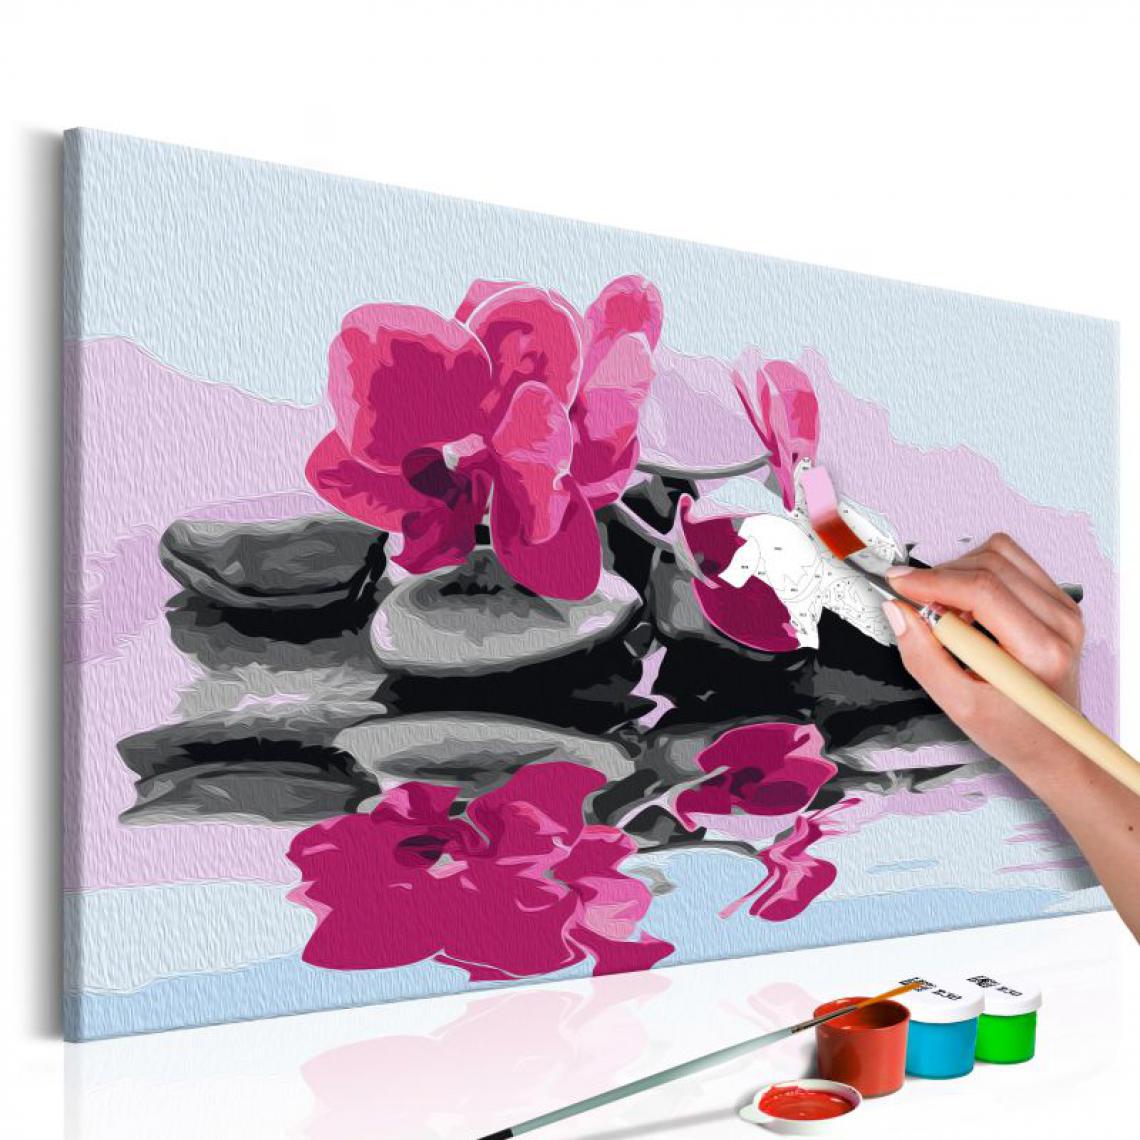 Paris Prix - Tableau à Peindre Soi-Même Orchidée & Pierres Zen dans un Mirroir D'eau 40x60cm - Tableaux, peintures